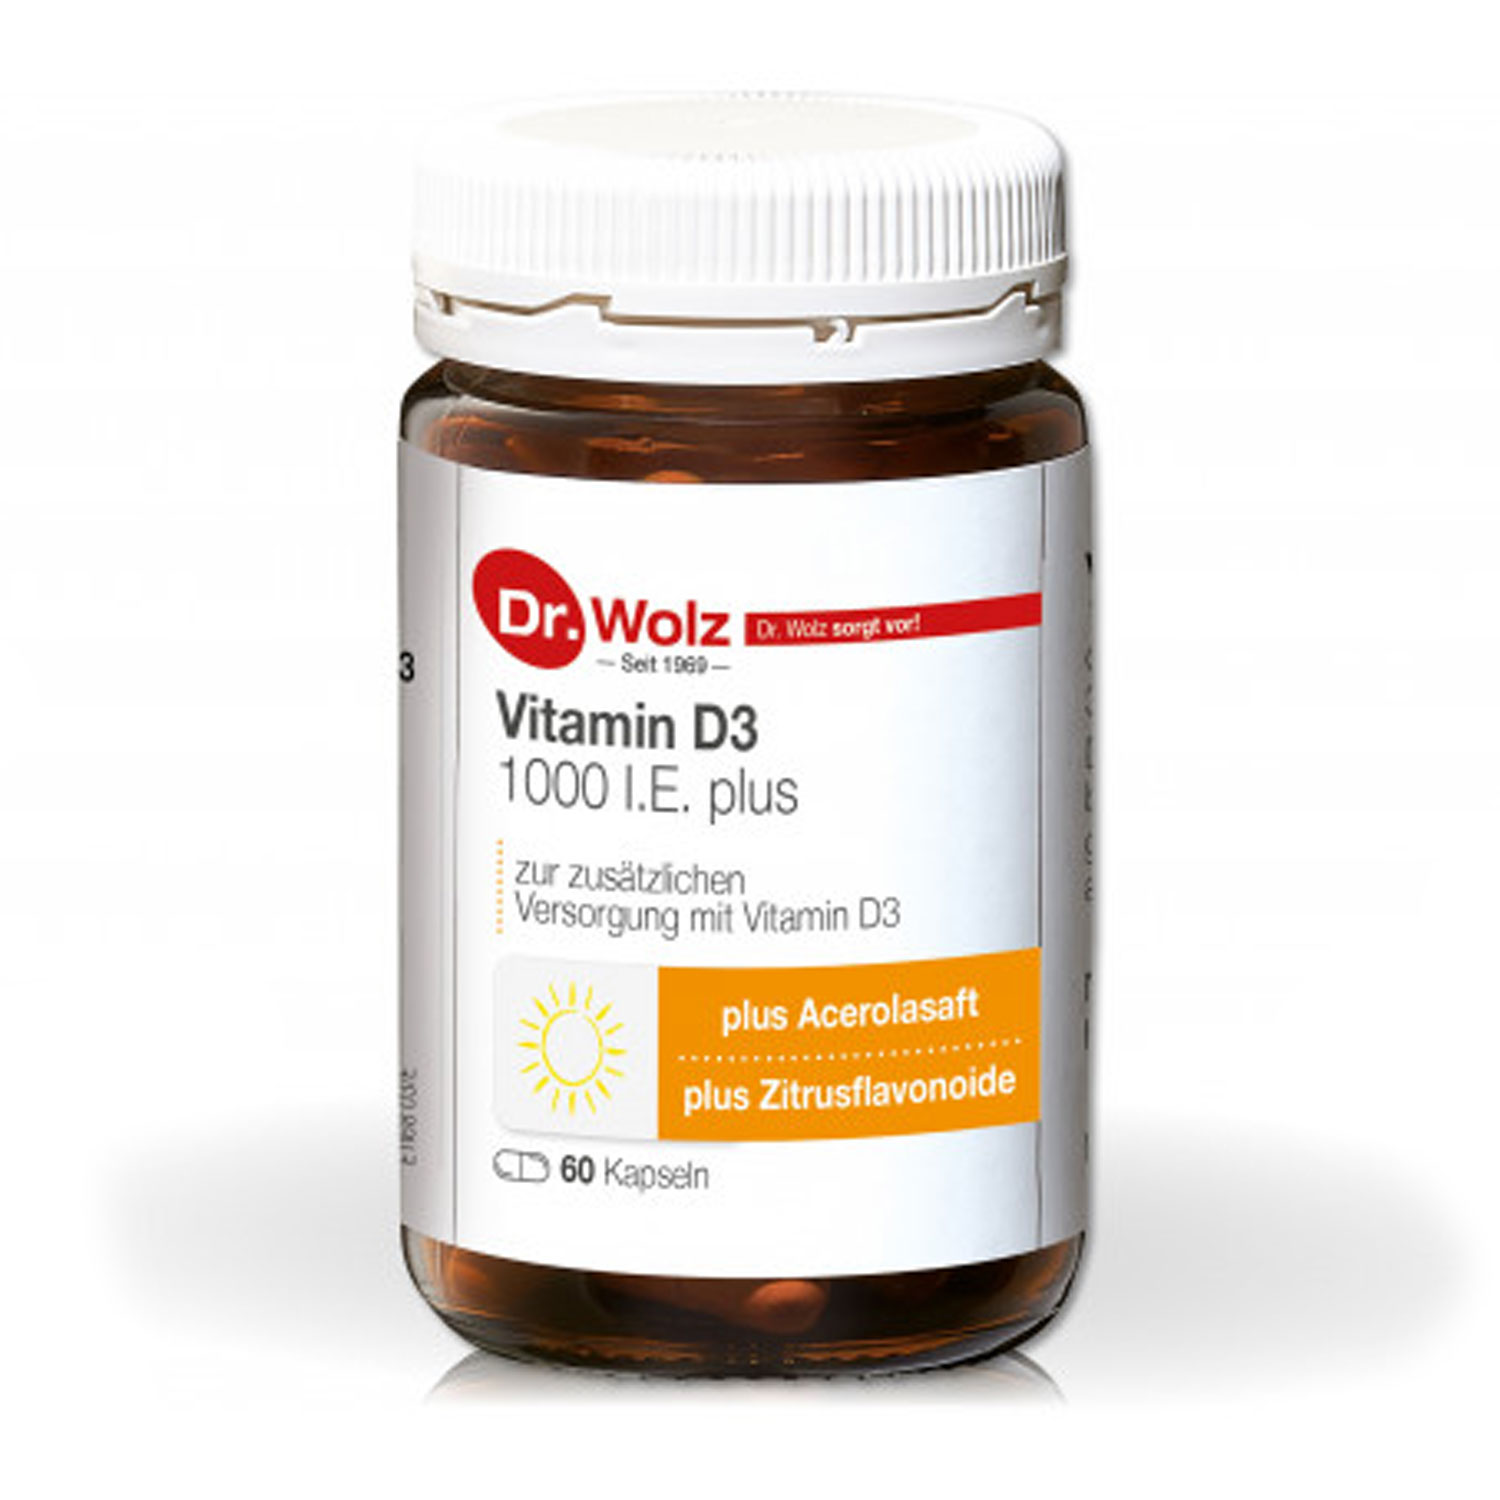 Vitamin D3 1000 I.E. plus - 60 Kapseln